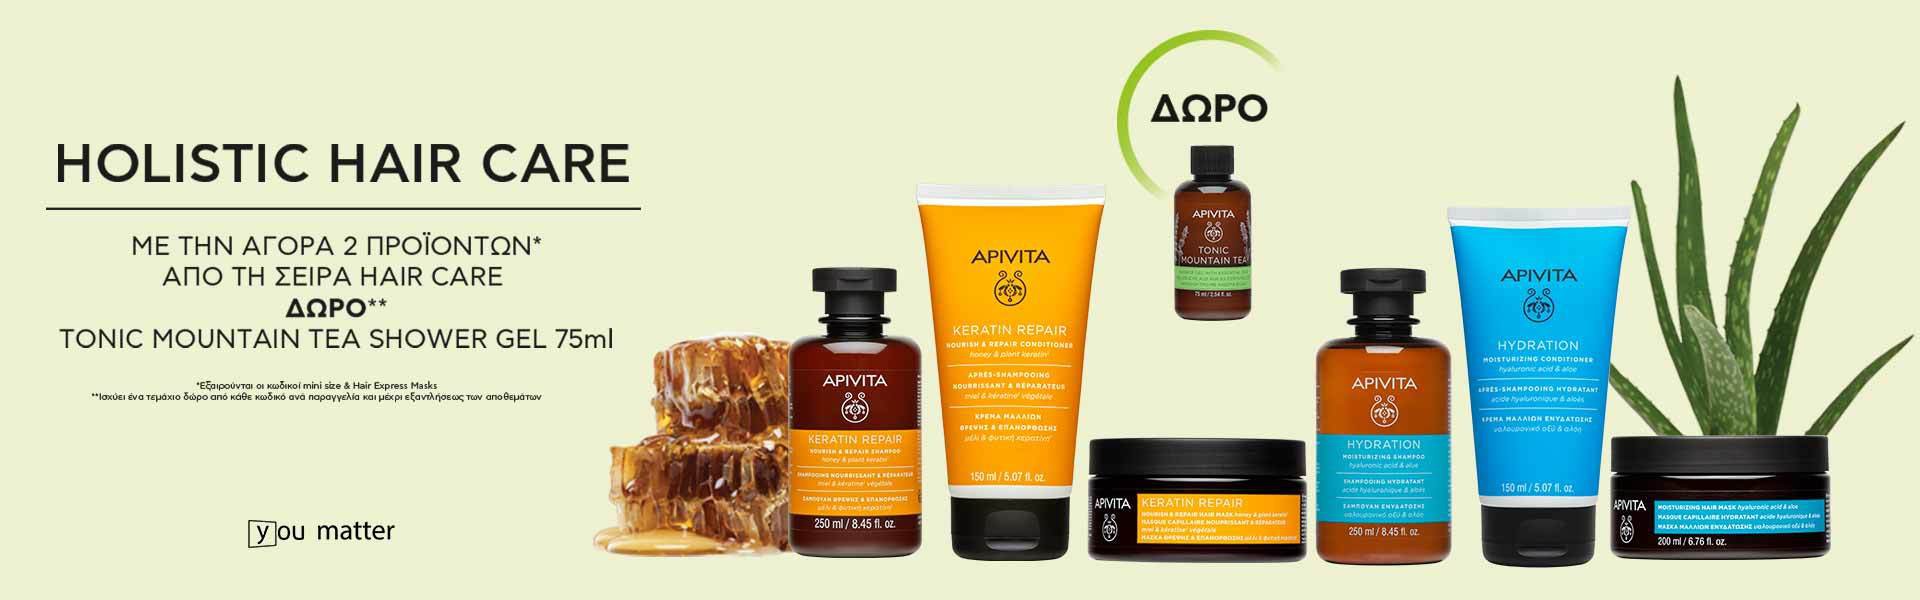 Apivita hair care